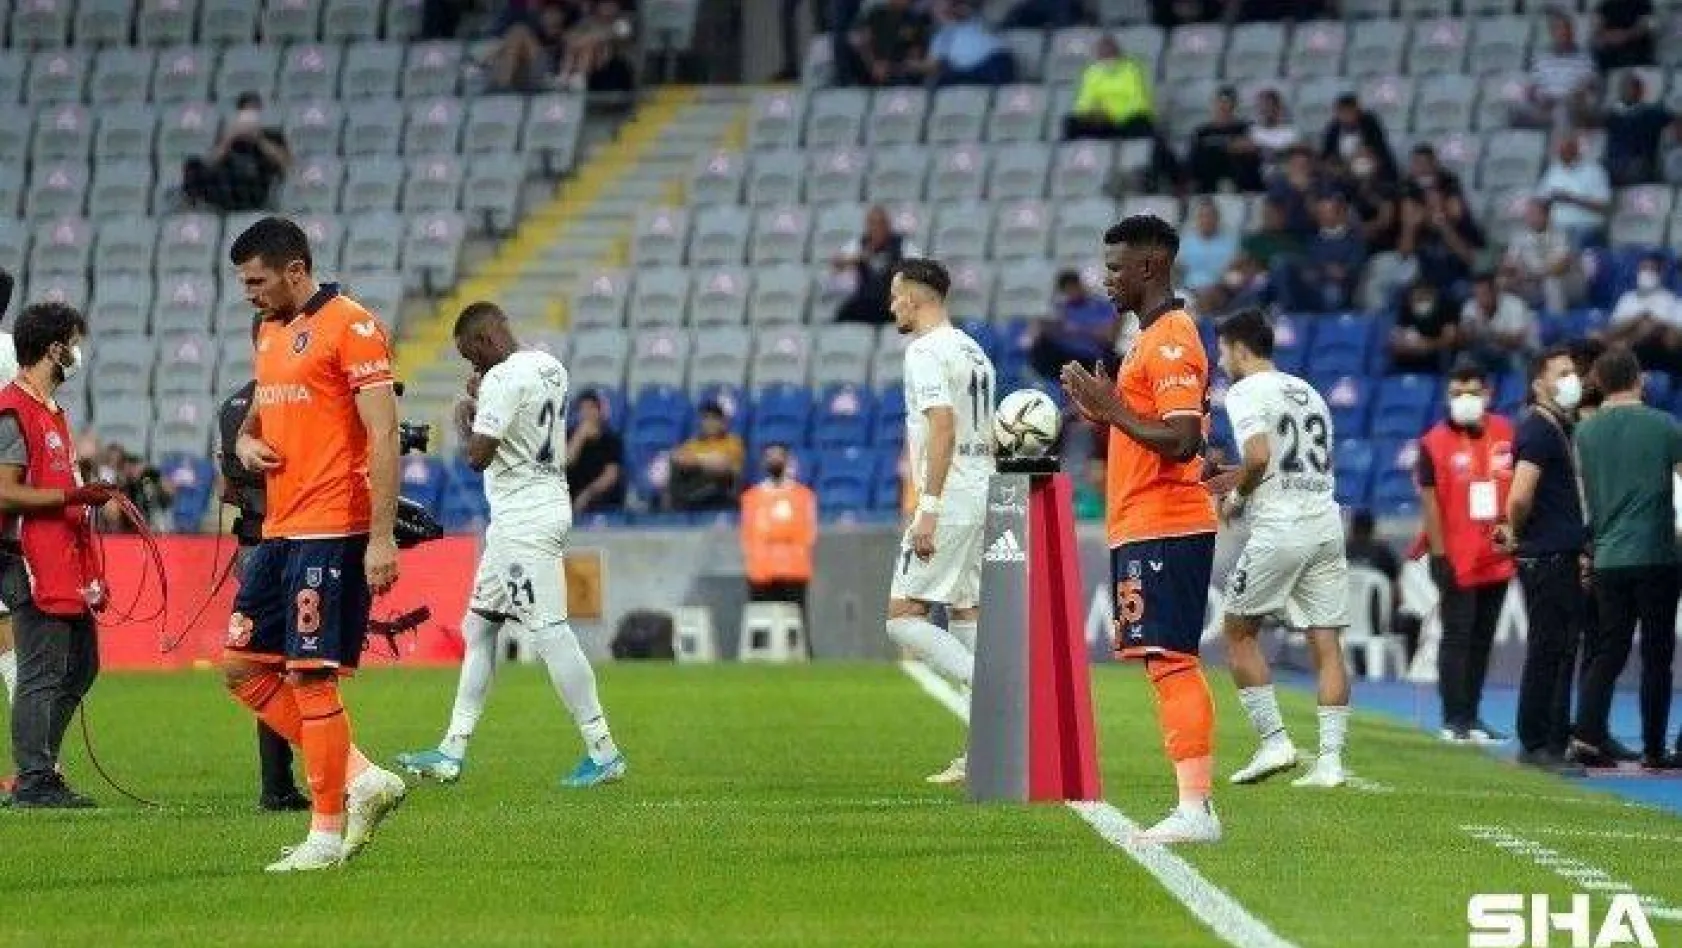 Süper Lig: Başakşehir: 1 - Fenerbahçe: 0 (Maç devam ediyor)